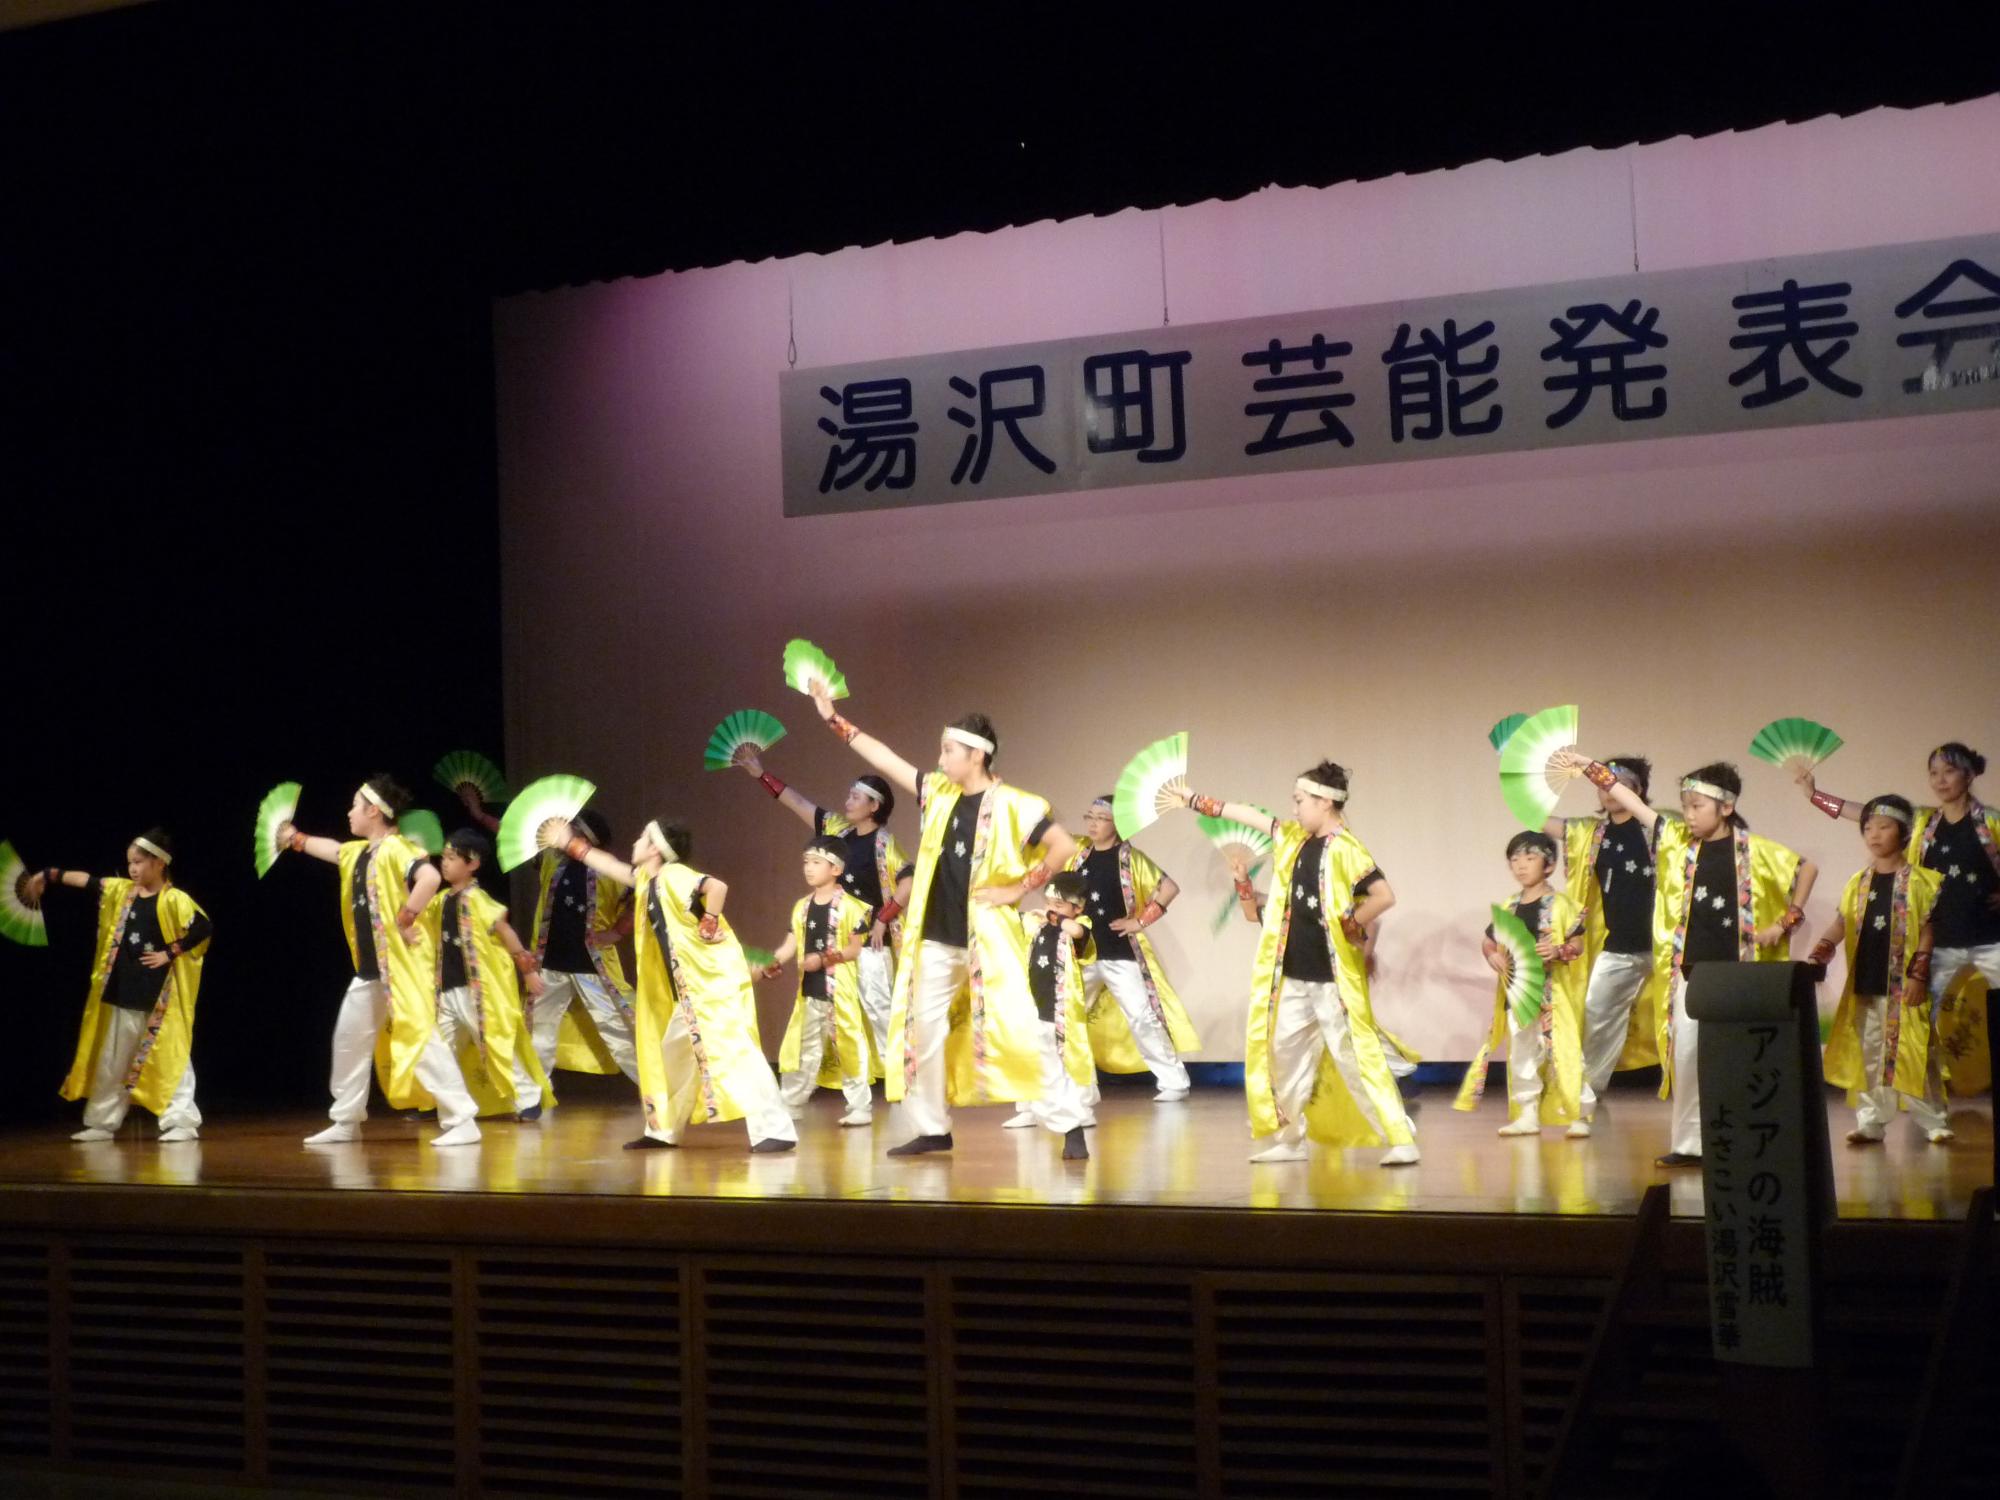 舞台でよさこいを踊るよさこい湯沢雪華のメンバーの写真